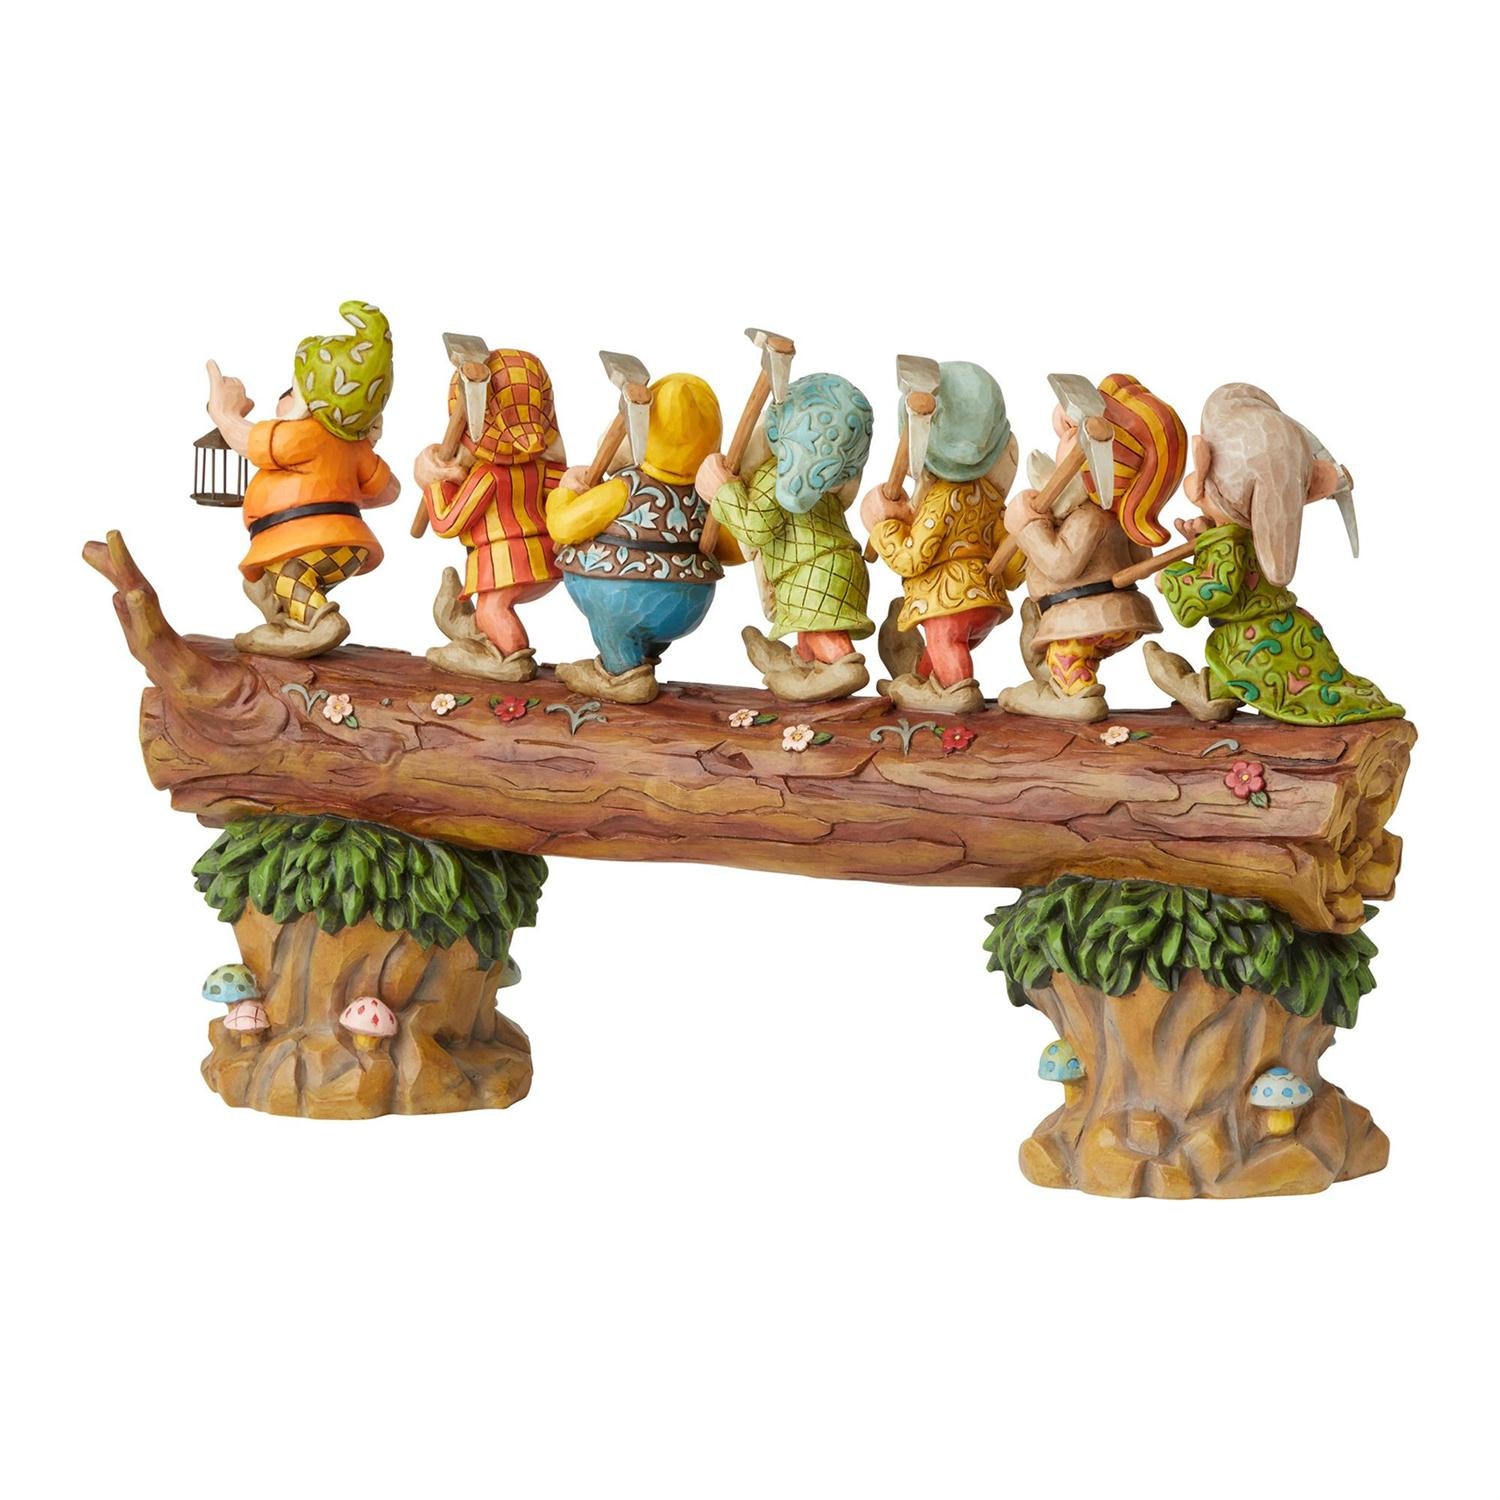 Seven Dwarfs on the tree log - Back side